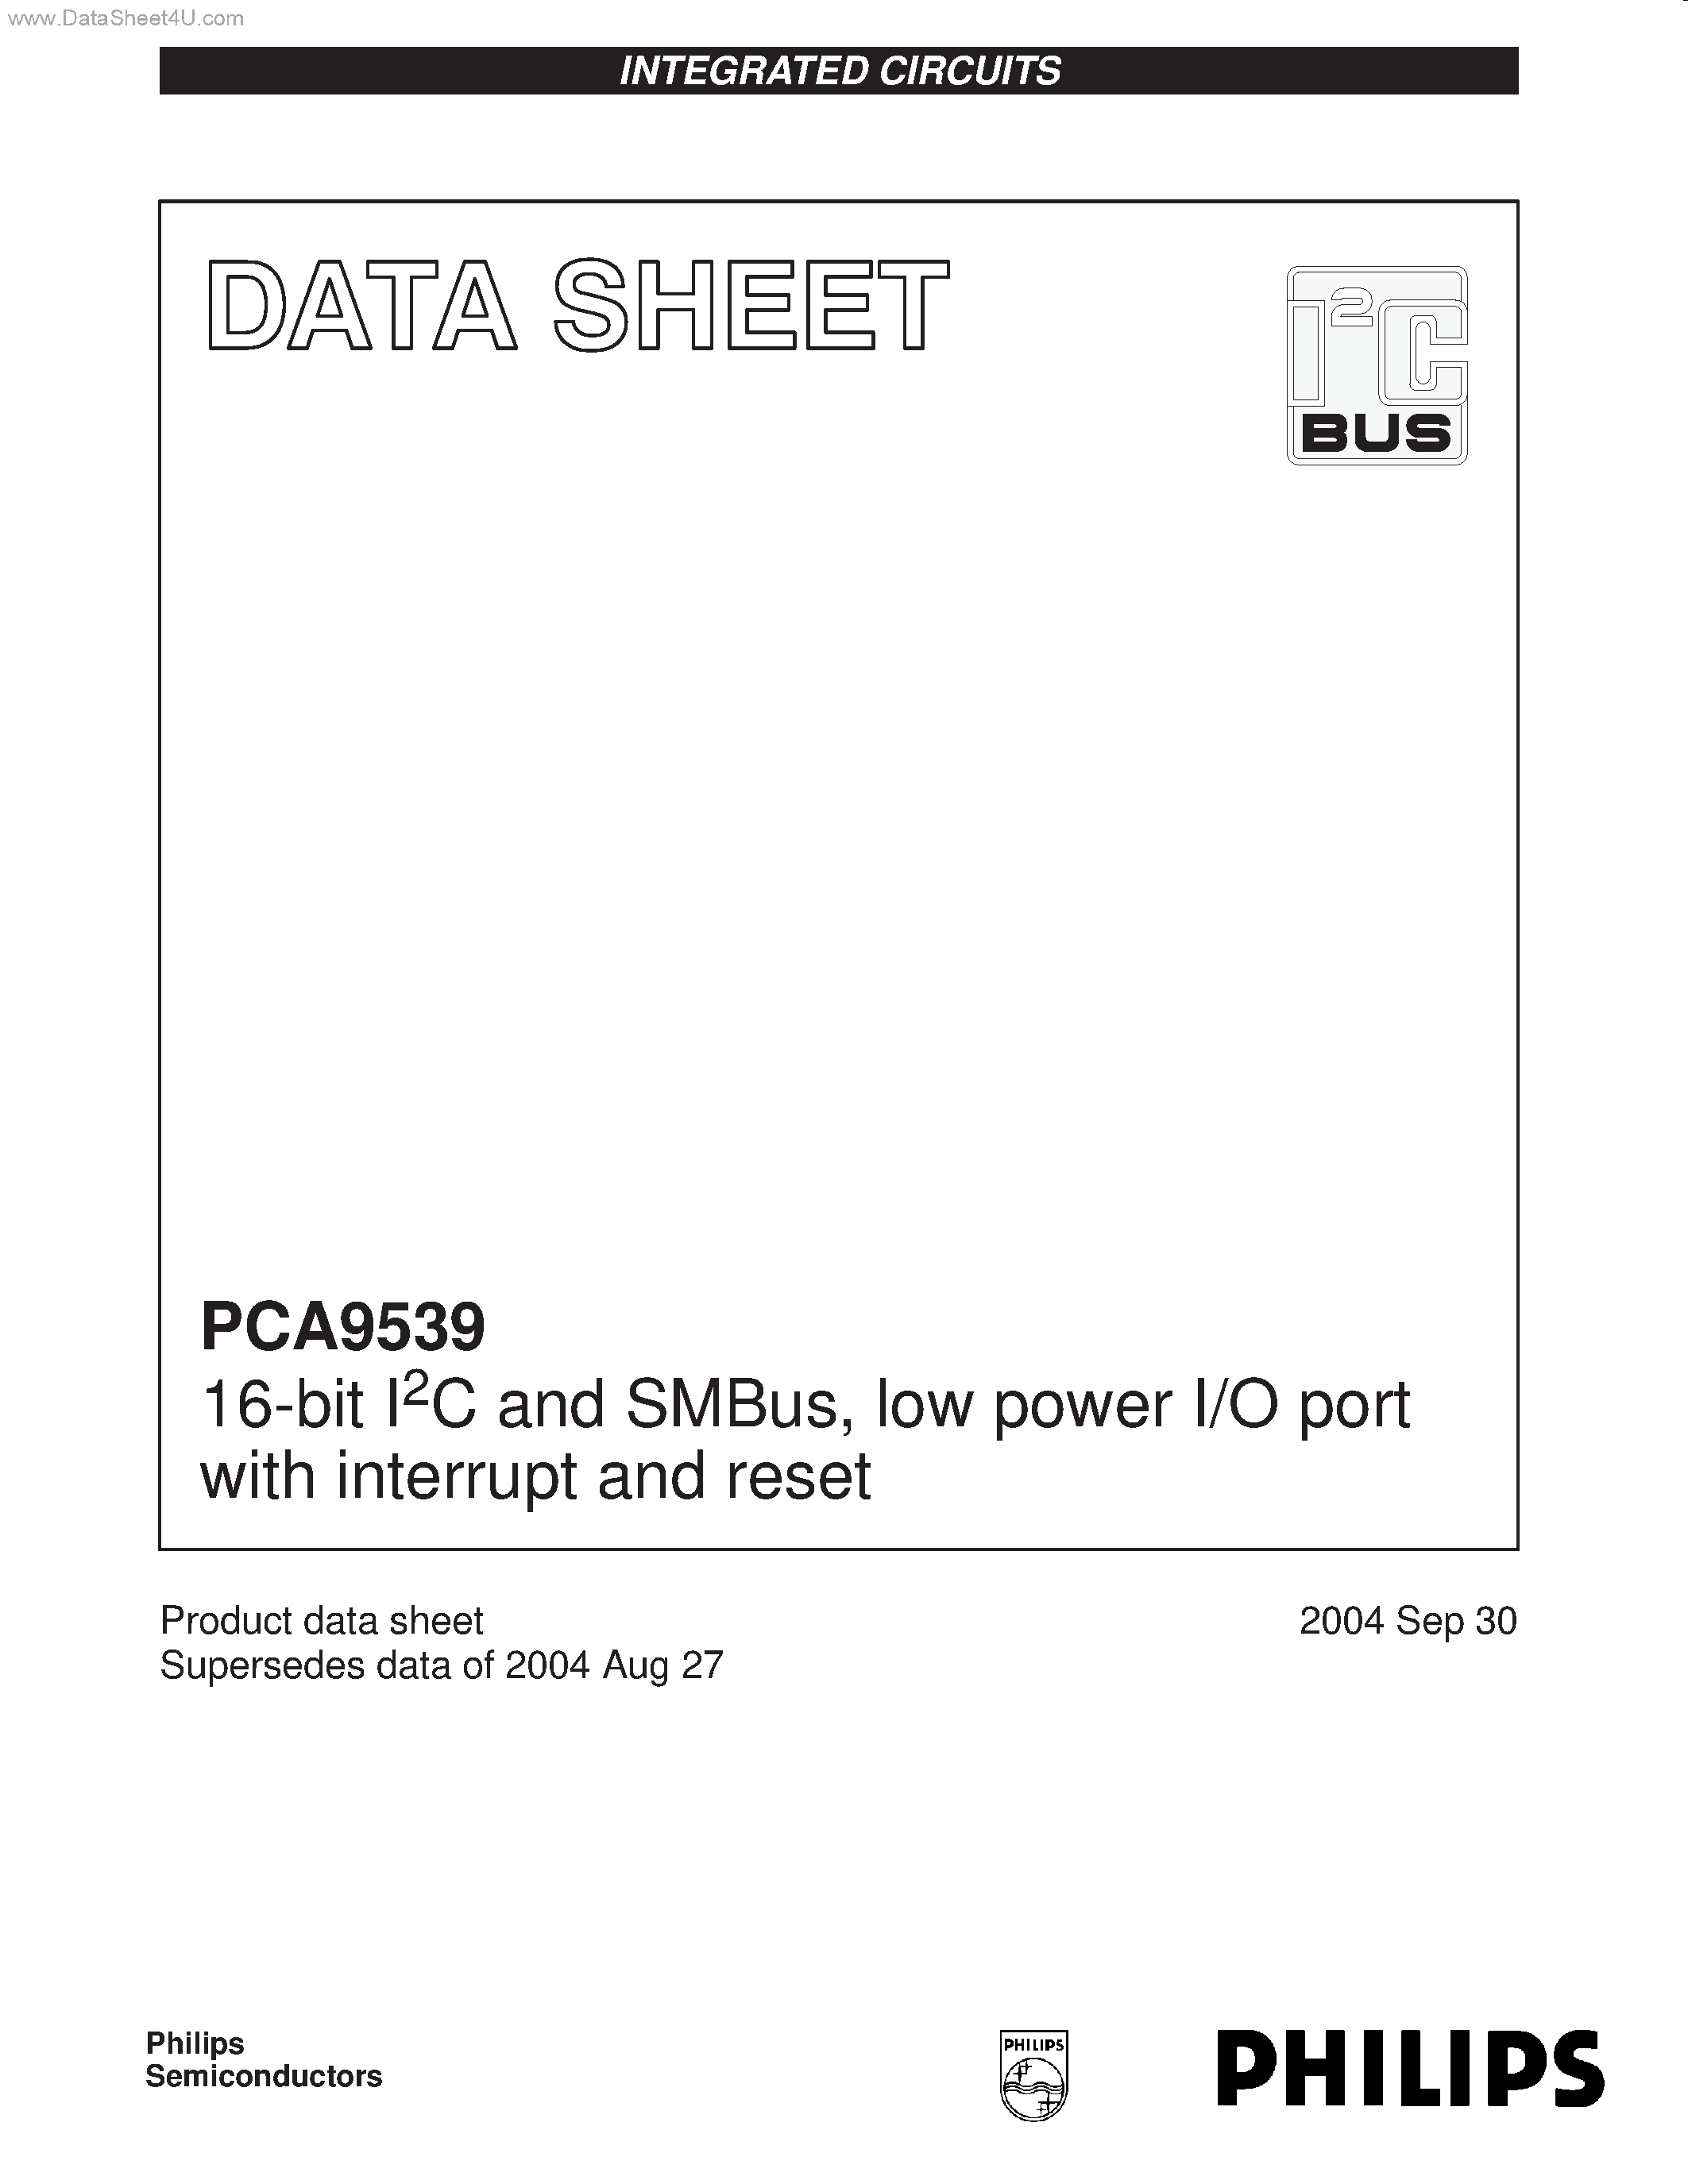 Даташит PCA9539 - 16-bit I2C and SMBus low power I/O port страница 1